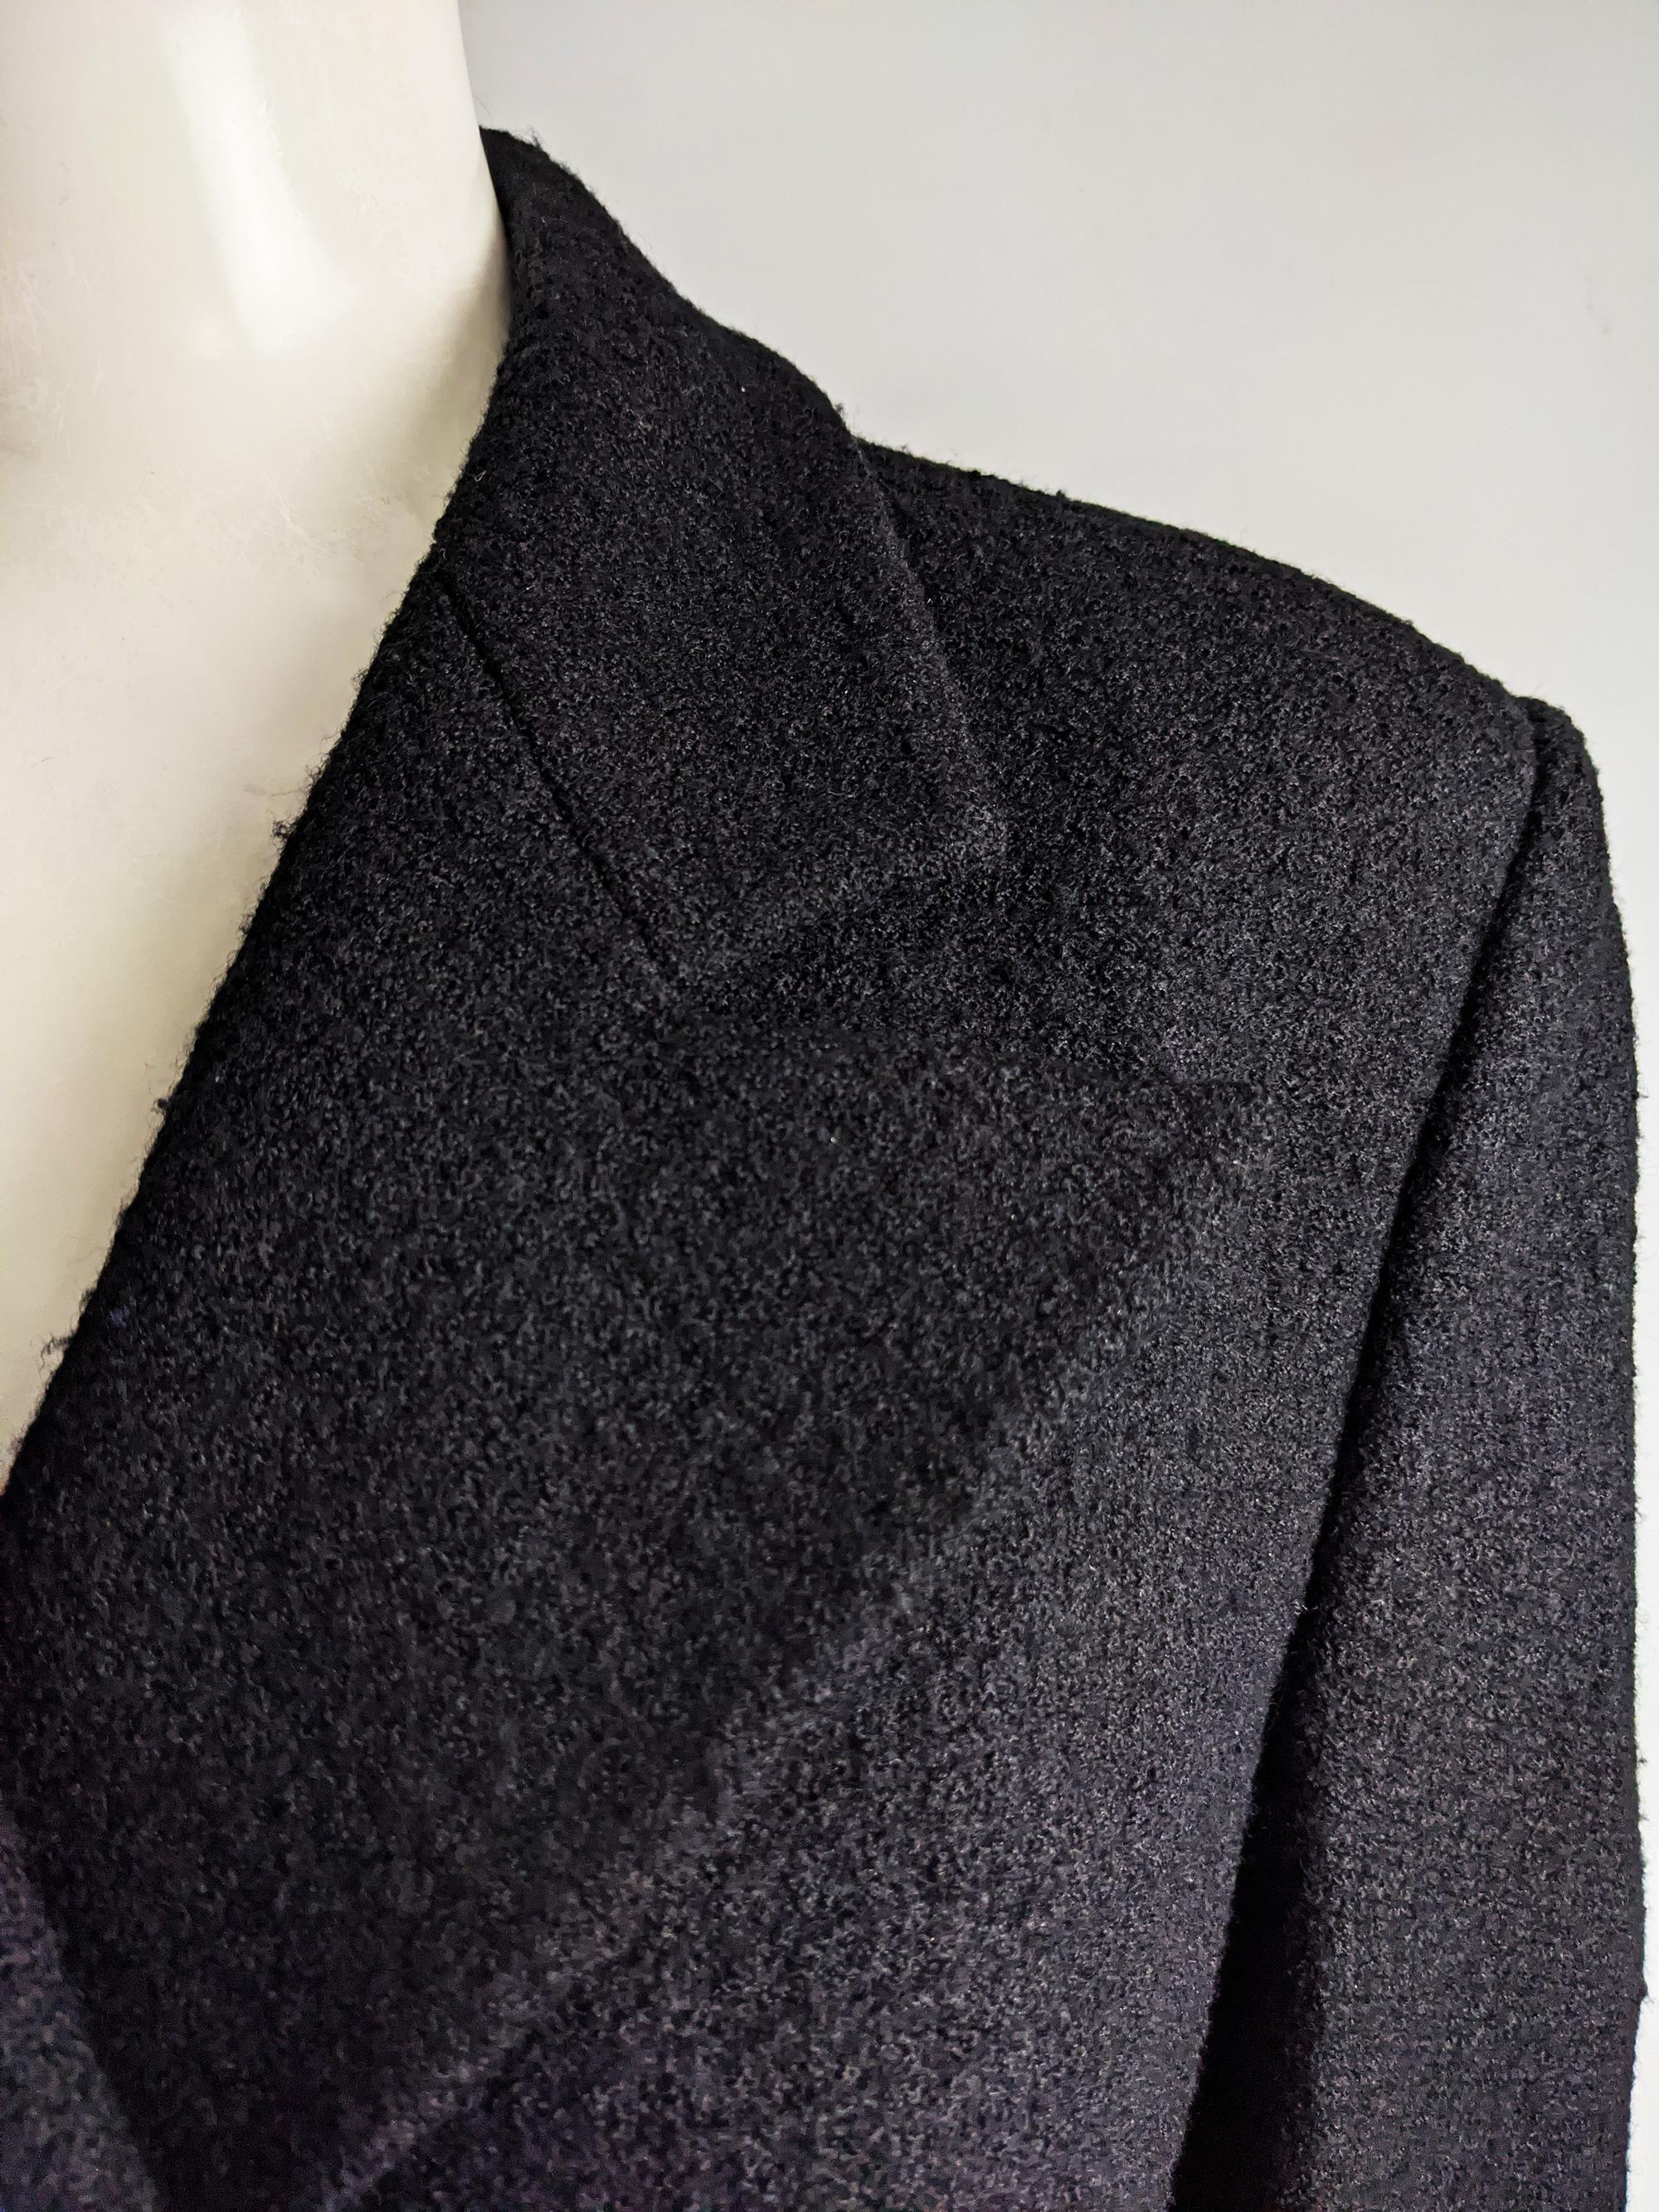 Gianni Versace Versus Vintage Black Wool Tweed Jacket 1